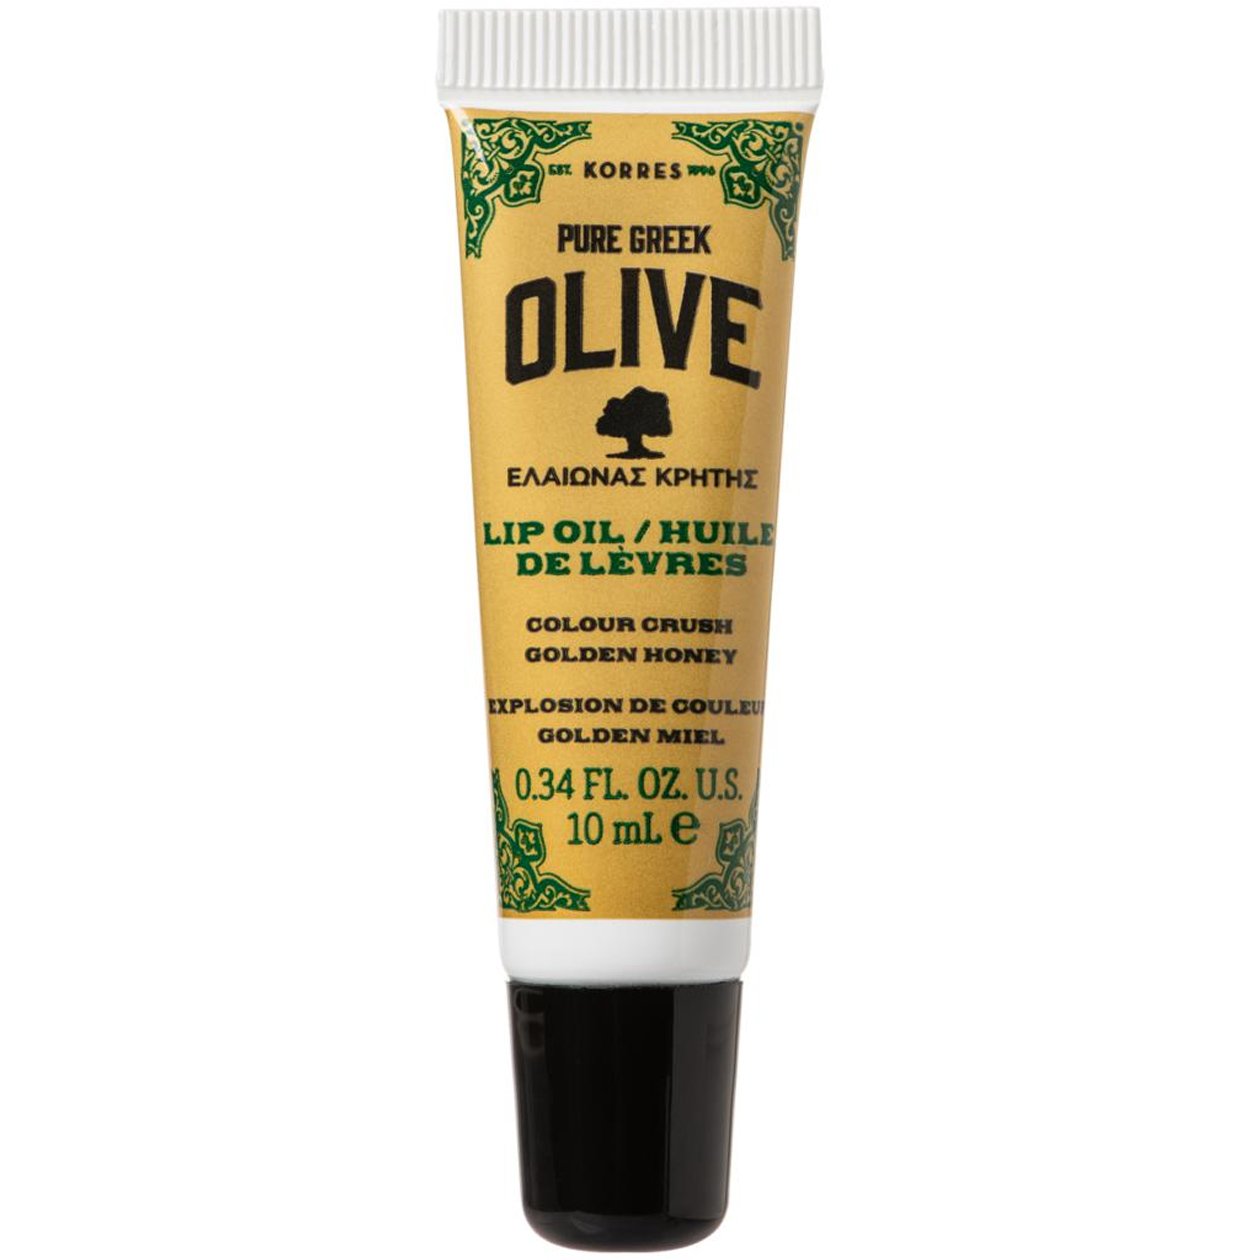 Korres Pure Greek Olive Lip Oil Colour Crush Golden Honey Ενυδατική Φροντίδα για Ξηρά & Σκασμένα Χείλη με Εκχύλισμα Μελιού 10ml